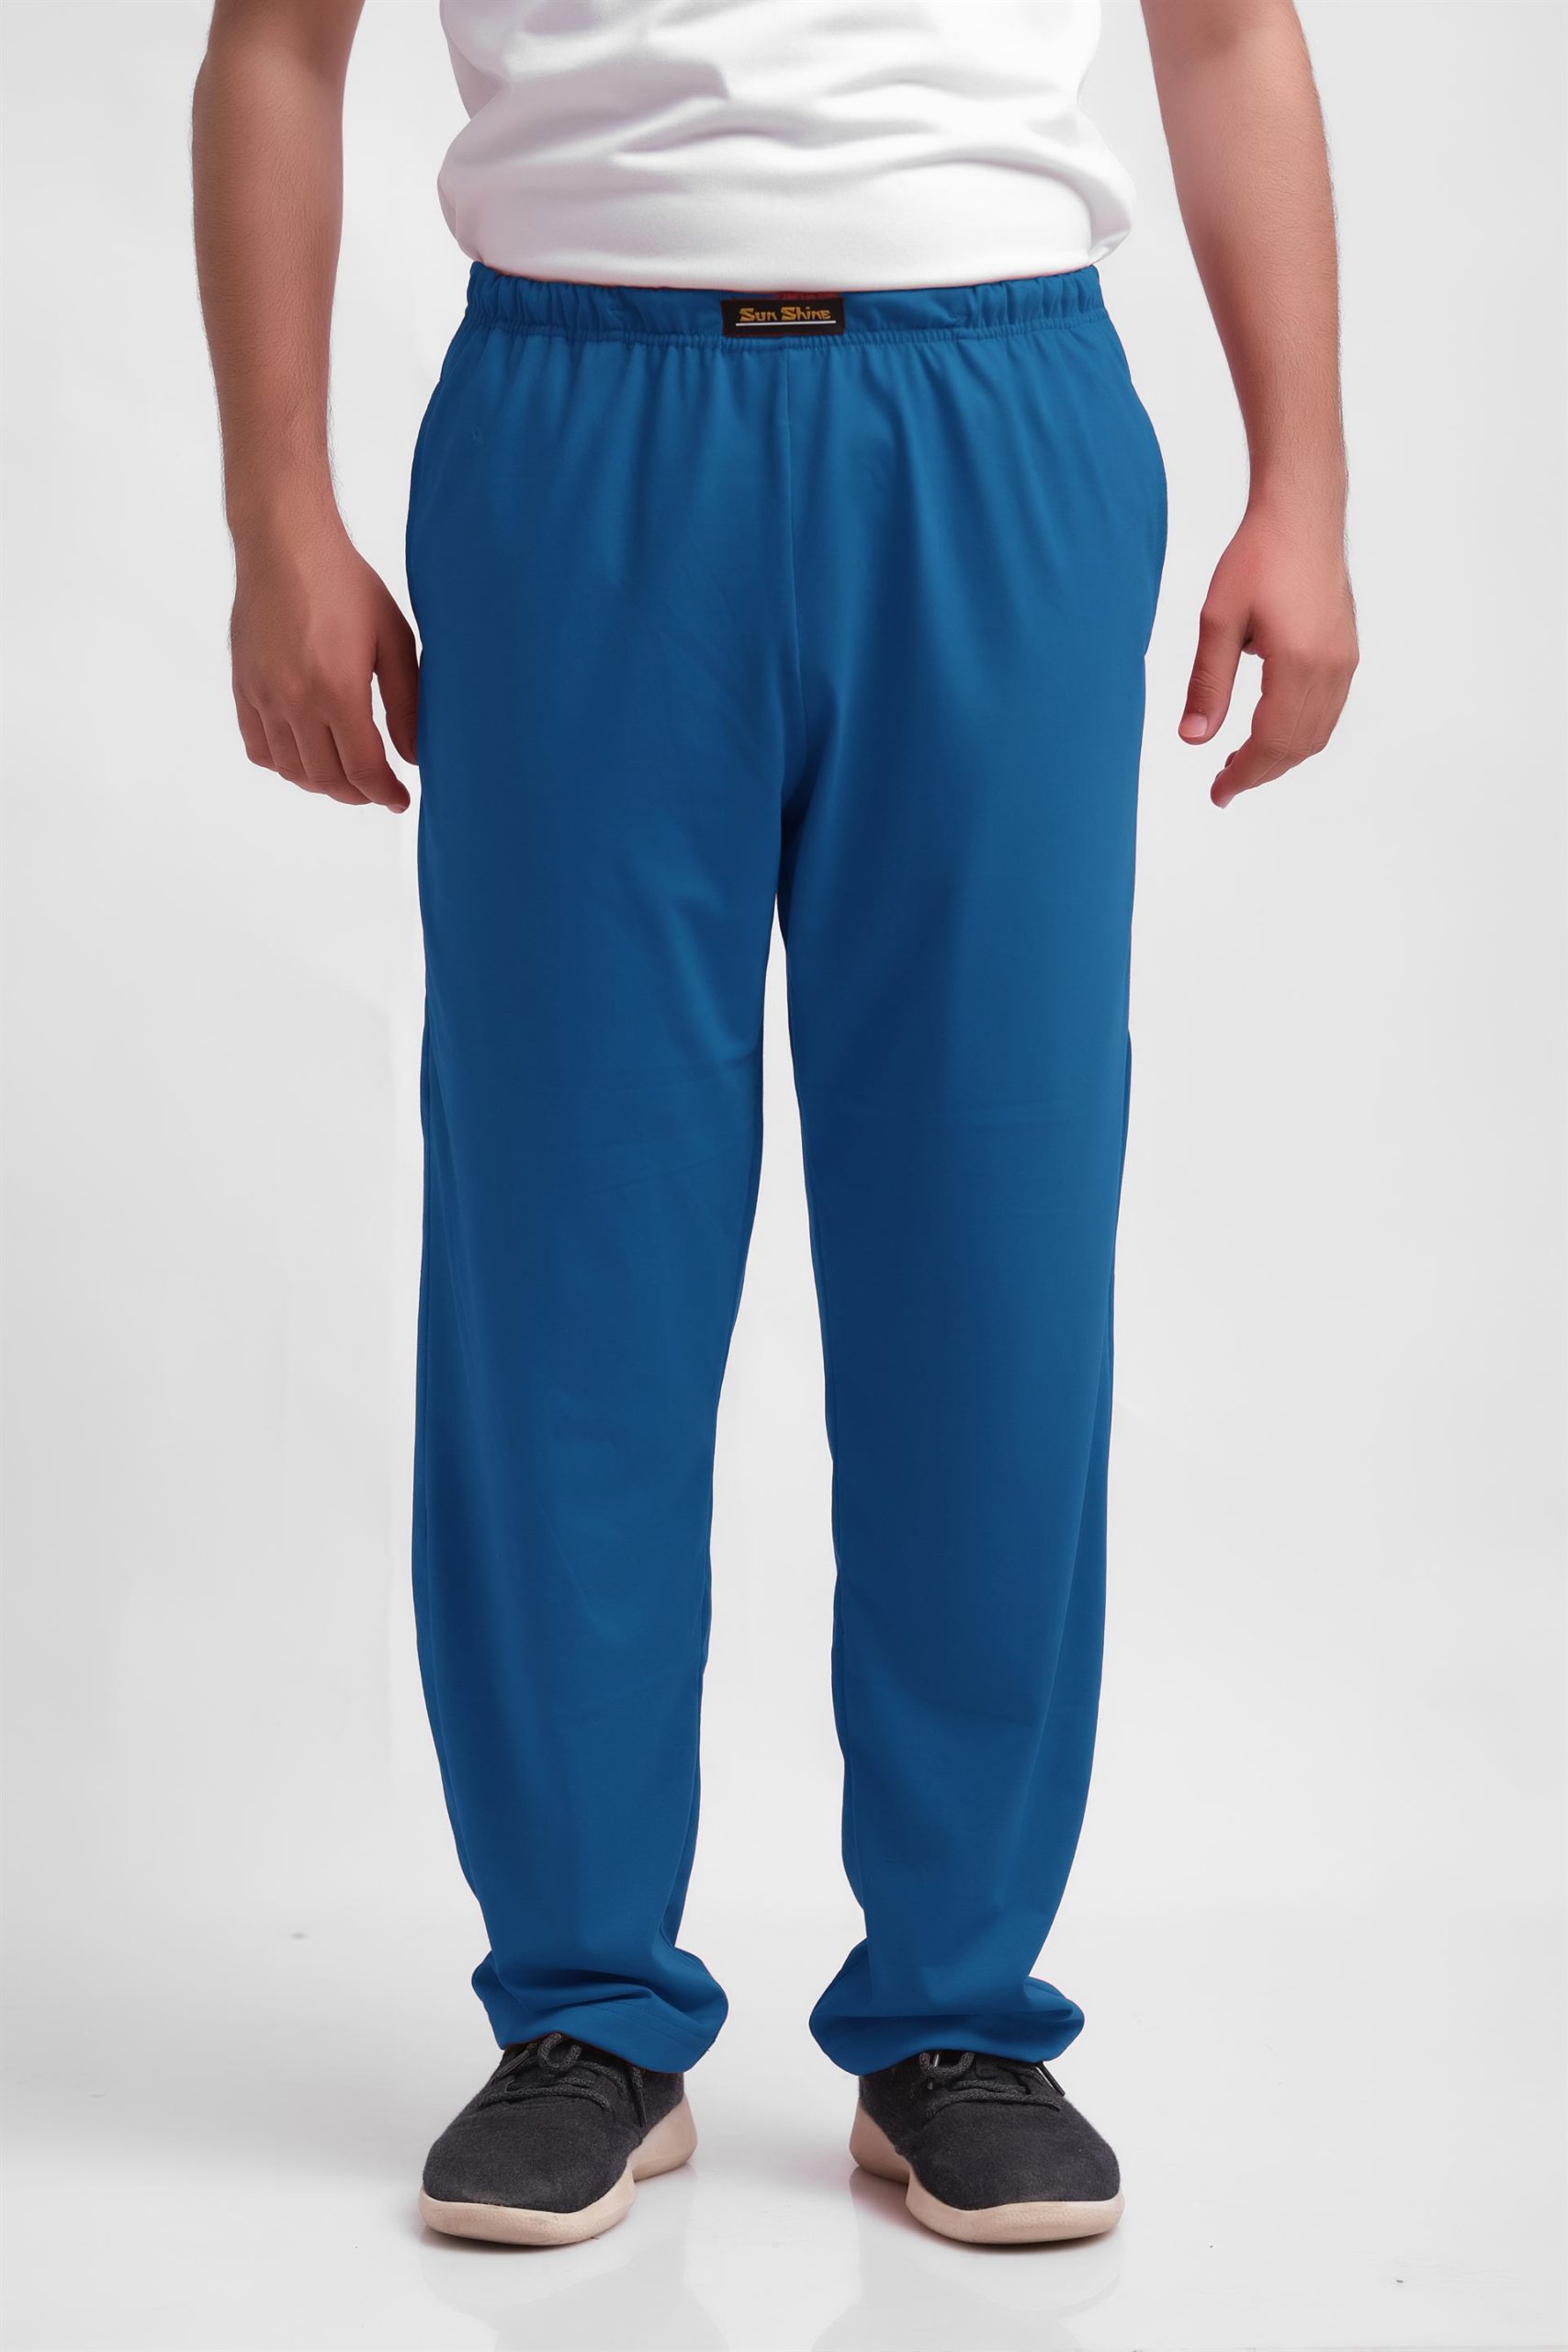 Jersey Pajama Pants Teal | Pajamas - Nightwears